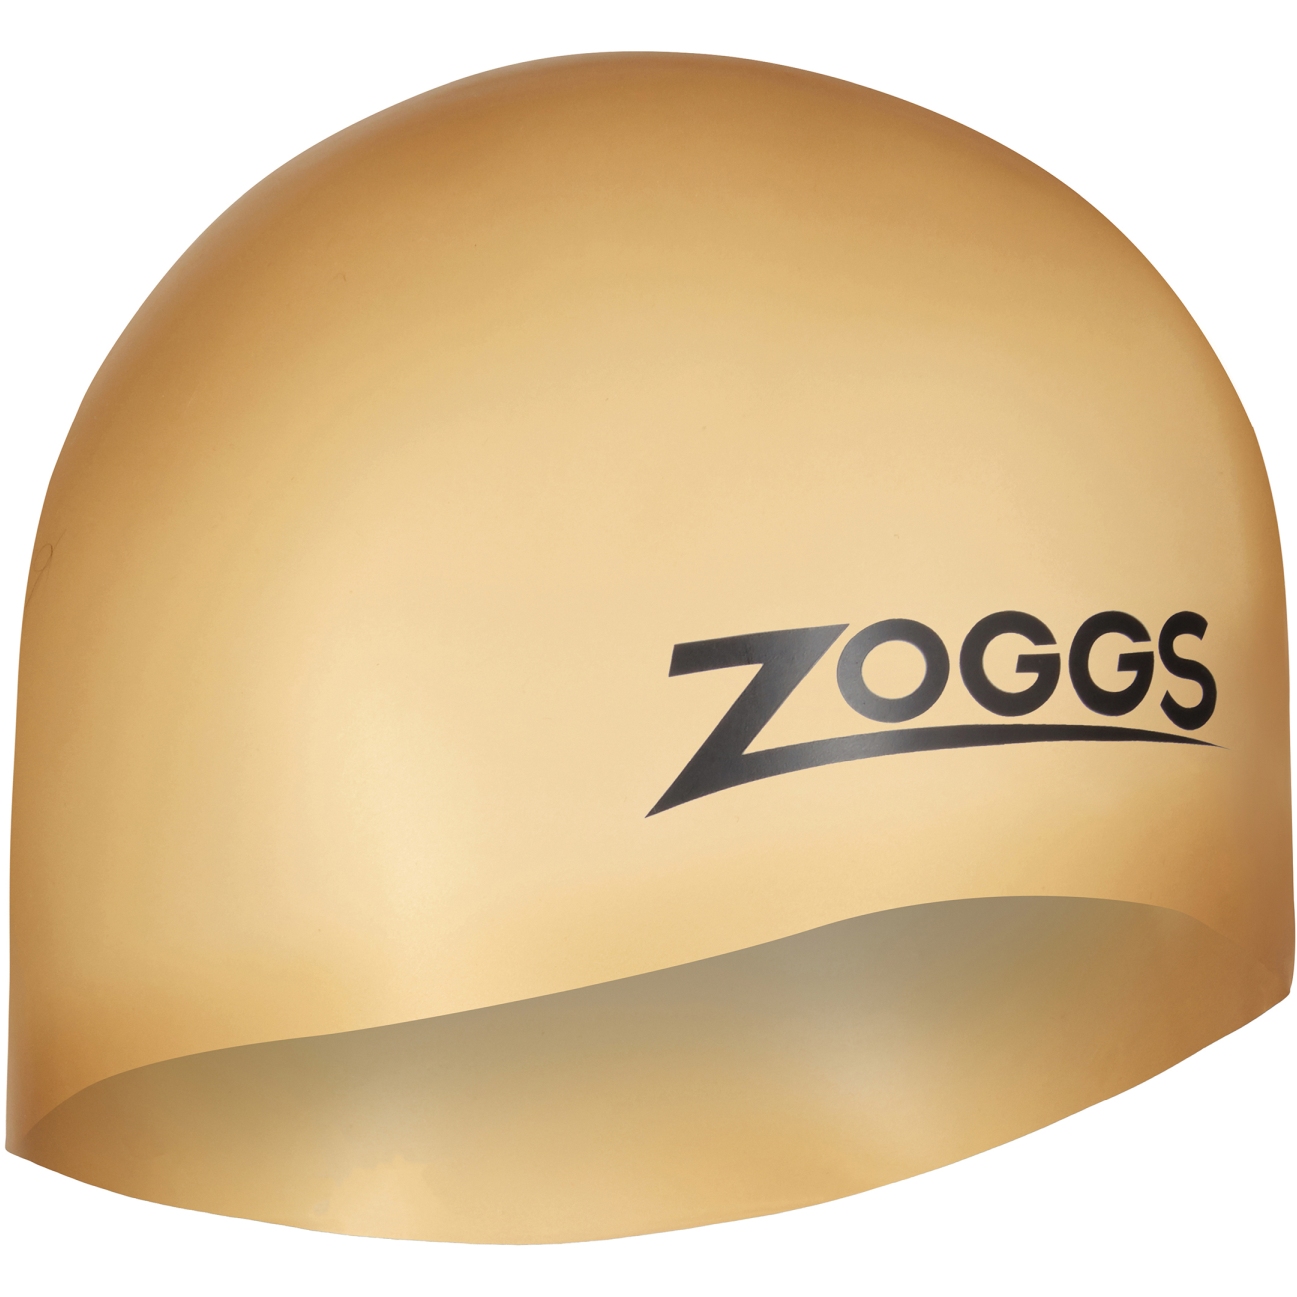 Productfoto van Zoggs Badmuts - Easy Fit Silicone - goud